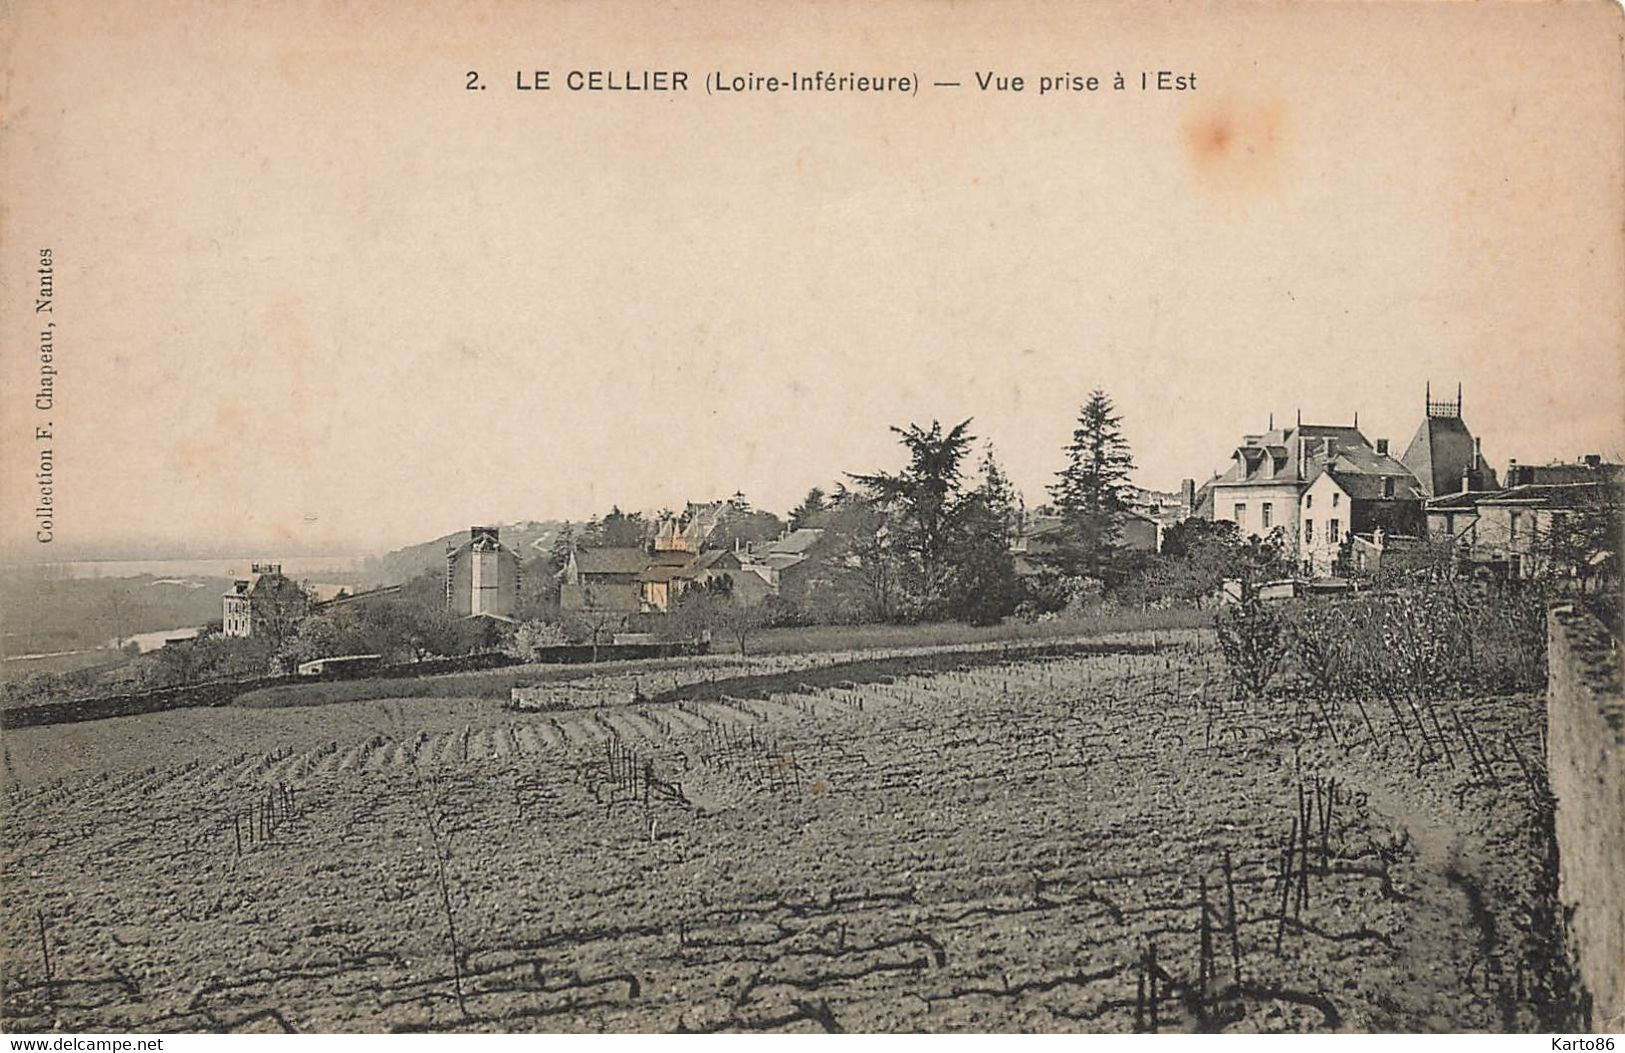 Le Cellier * Vue Du Village Prise à L'est * Vigne Vignoble - Le Cellier